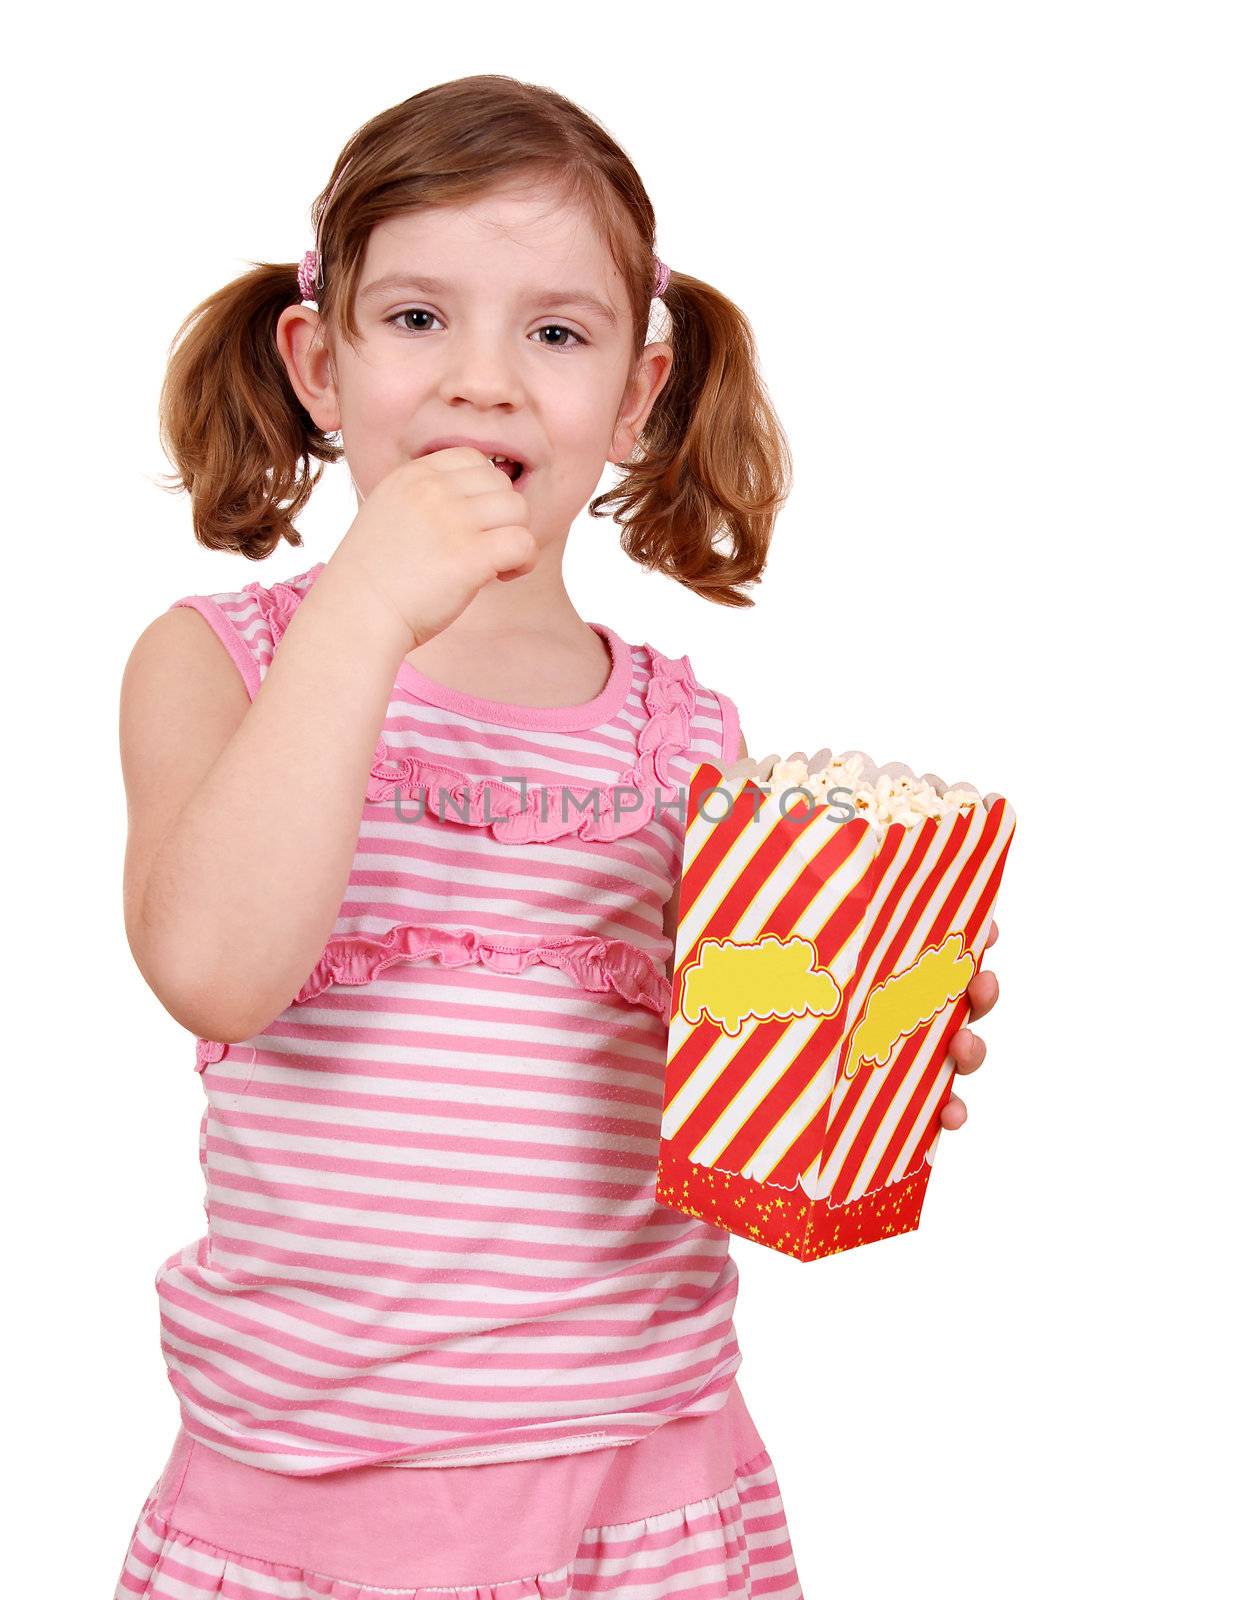 little girl eat popcorn on white by goce